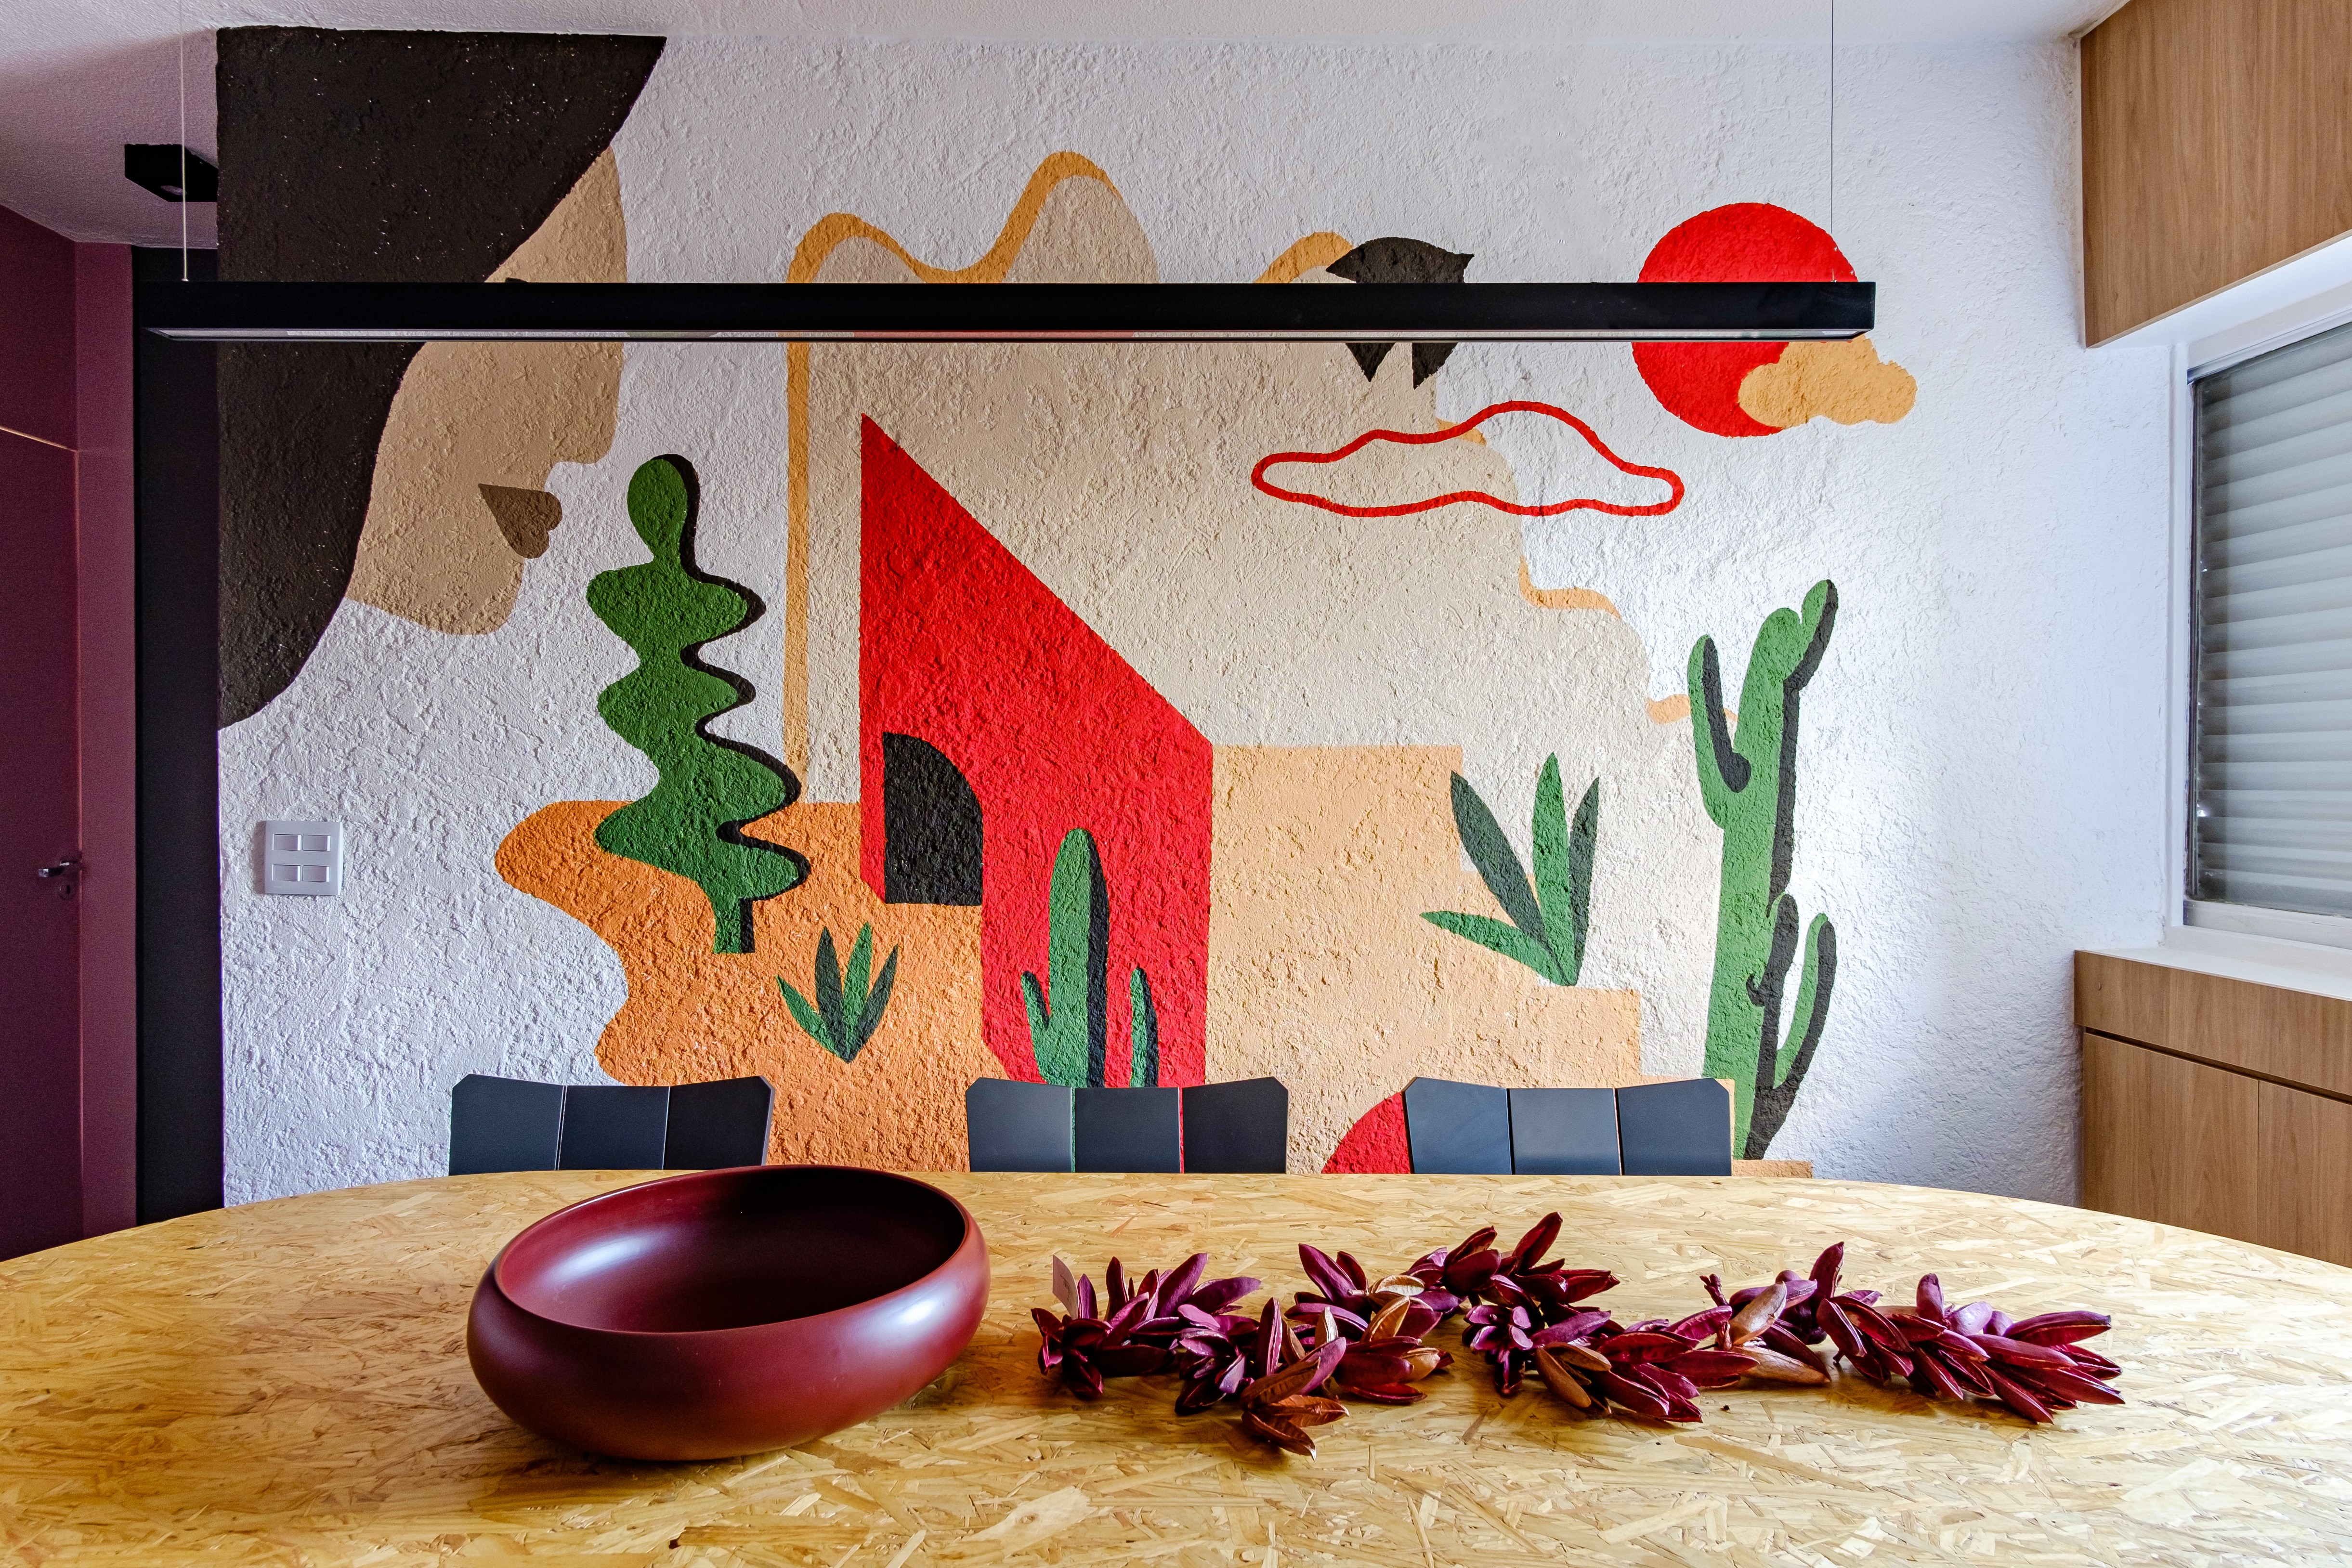 Décor do dia: sala de jantar com mural colorido na parede (Foto: Gabriel Robin)